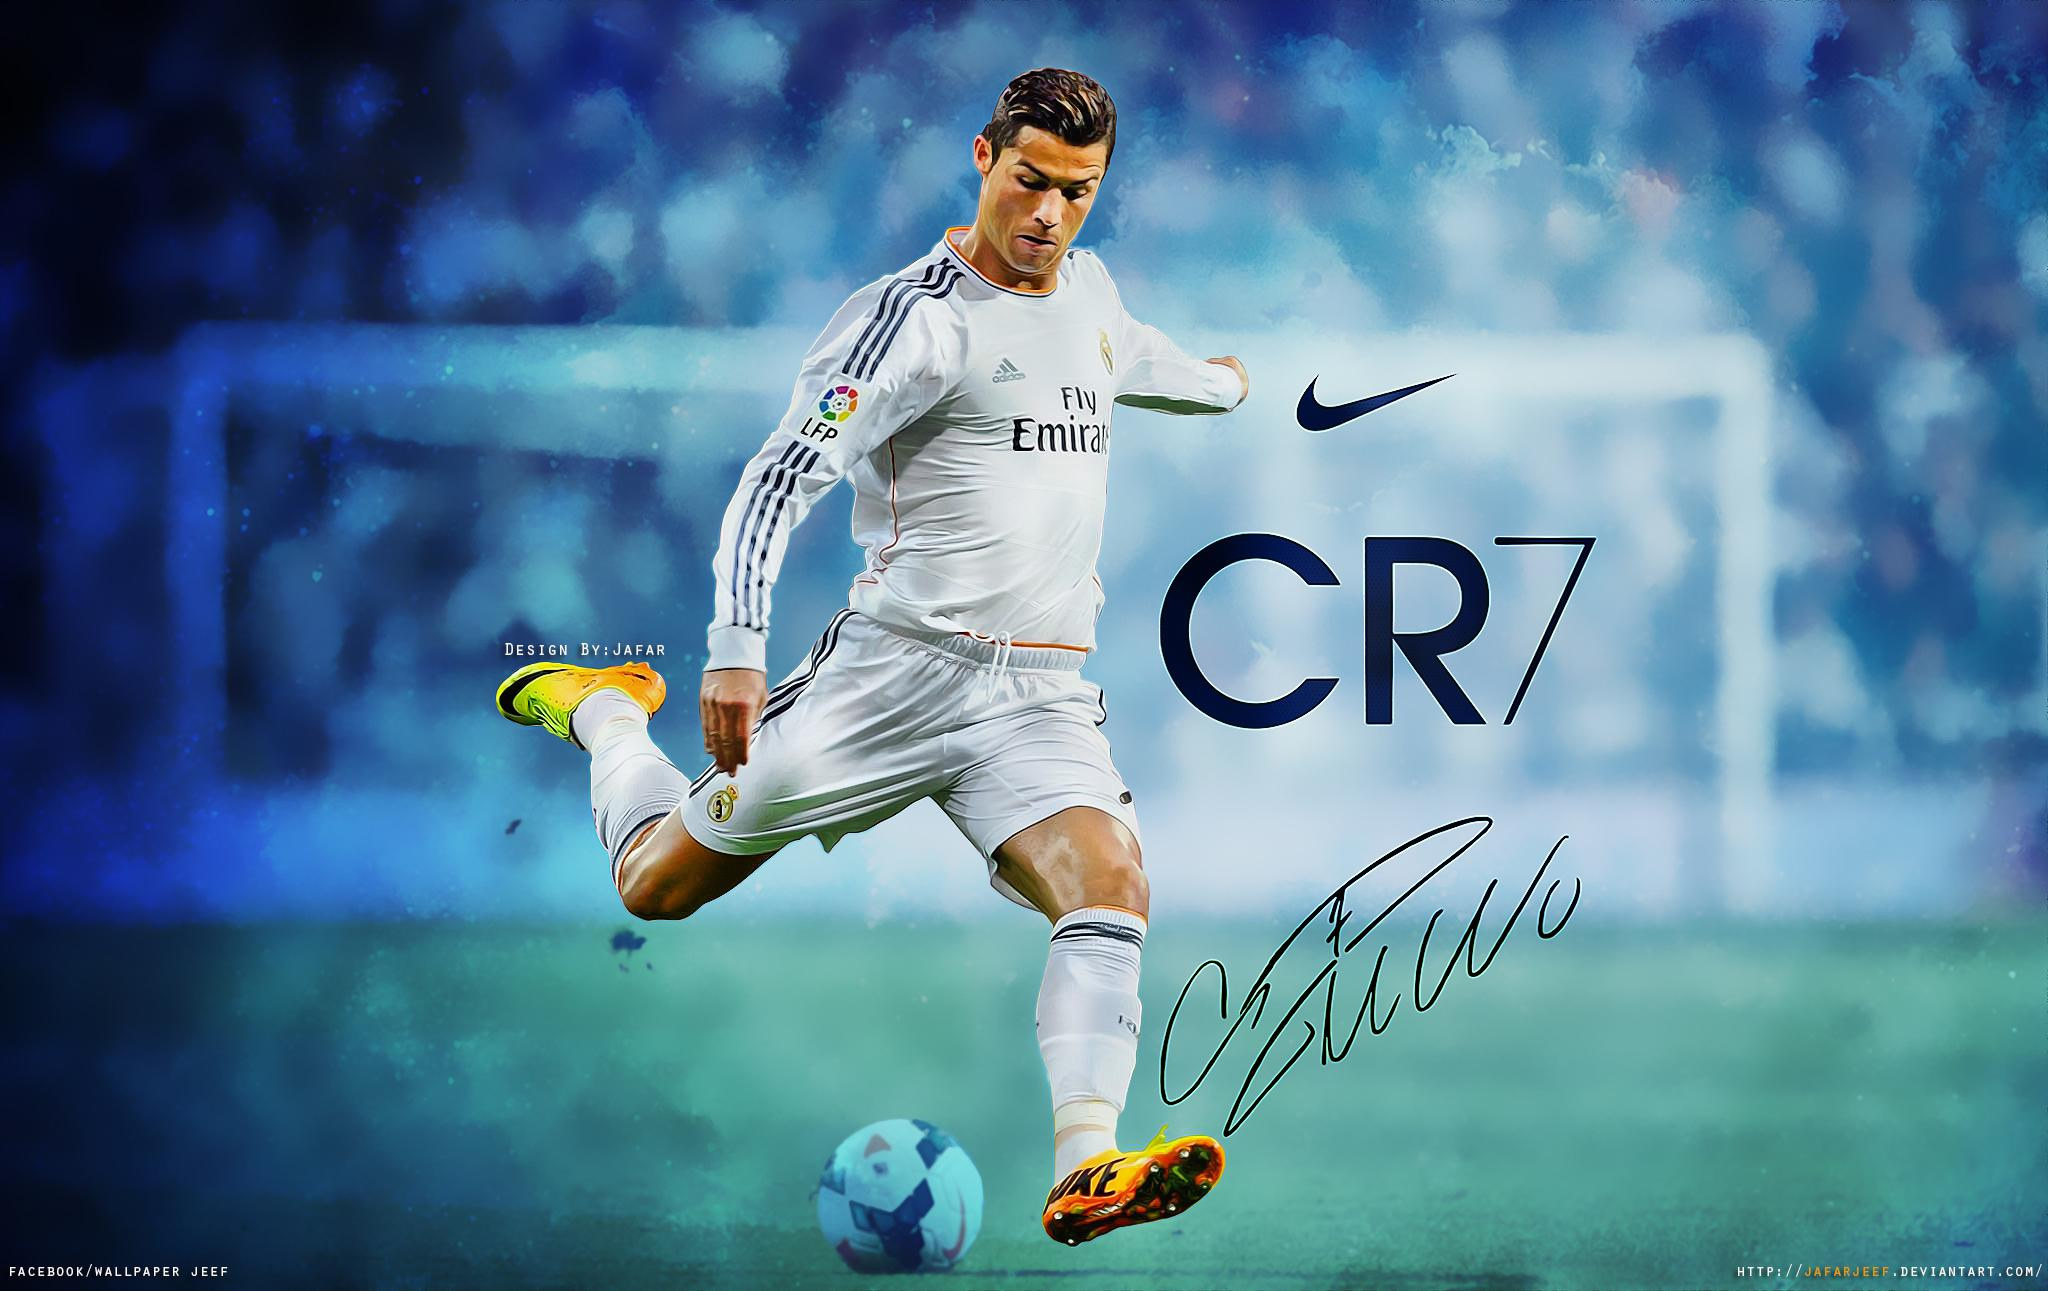 Cristiano-Ronaldo-wallpaper-by-Jafarjeef.jpg